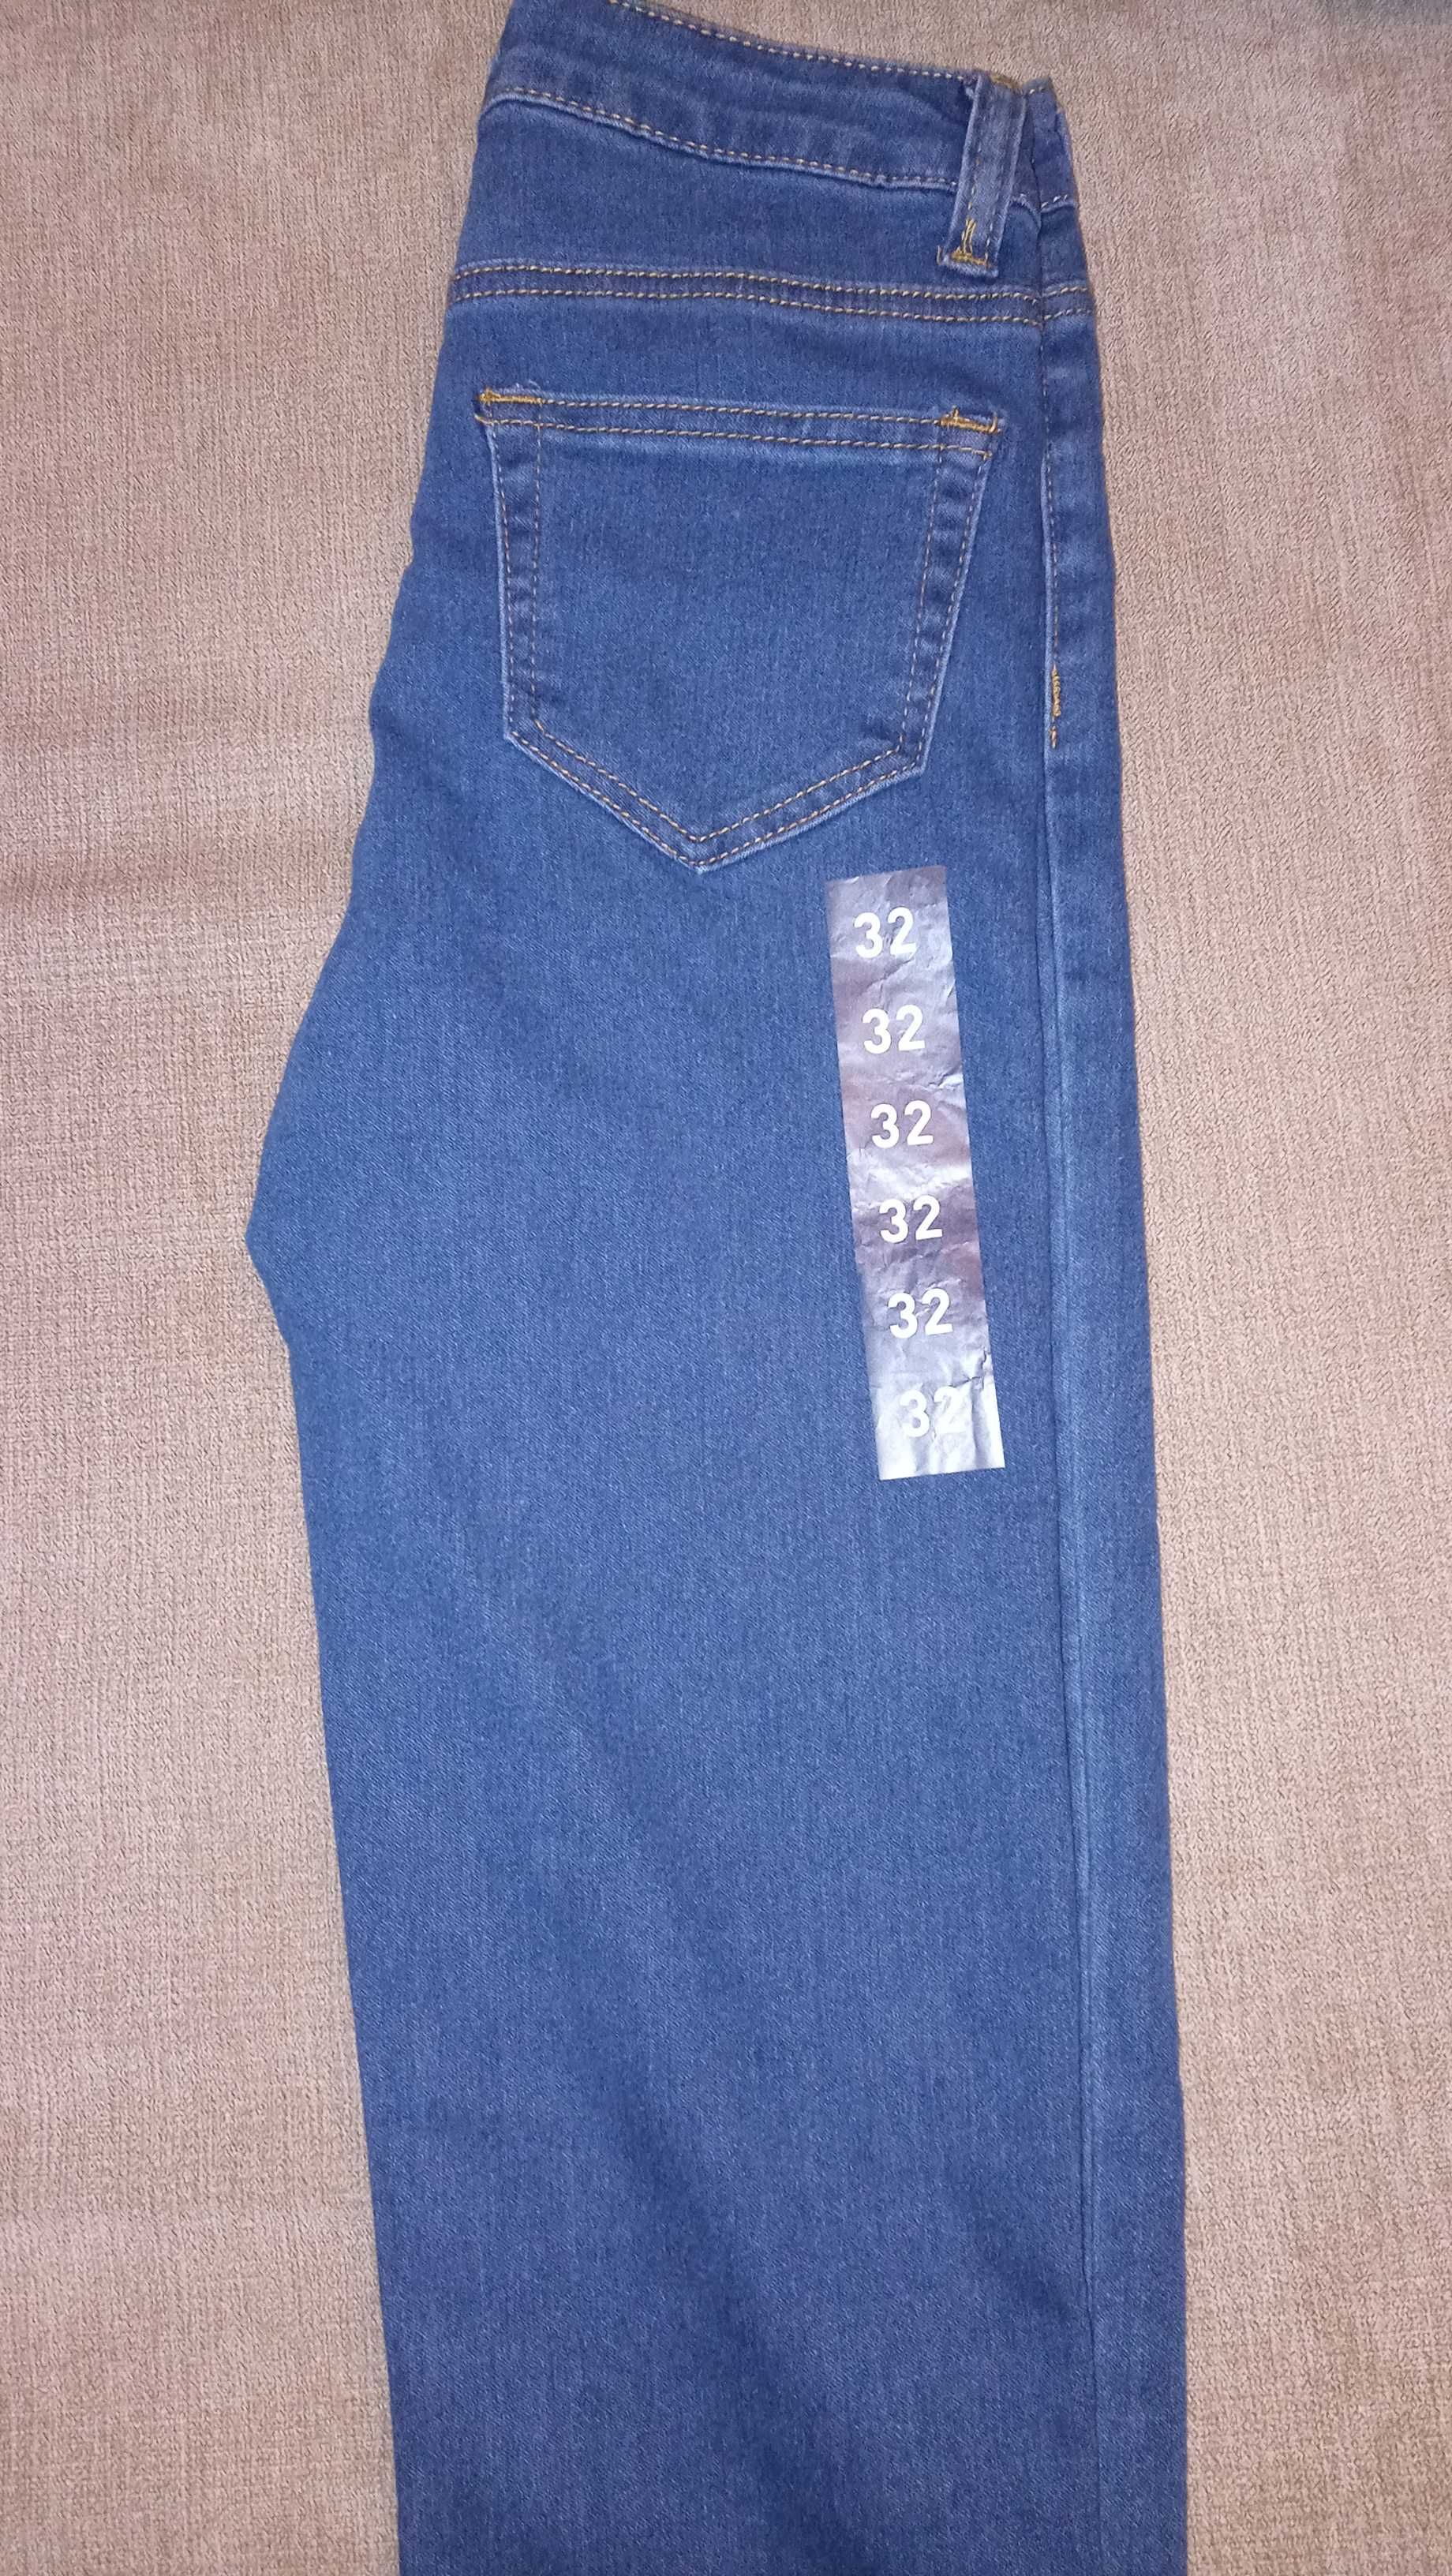 Spodnie dżinsowe dziewczęce, rozmiar 32, nowe